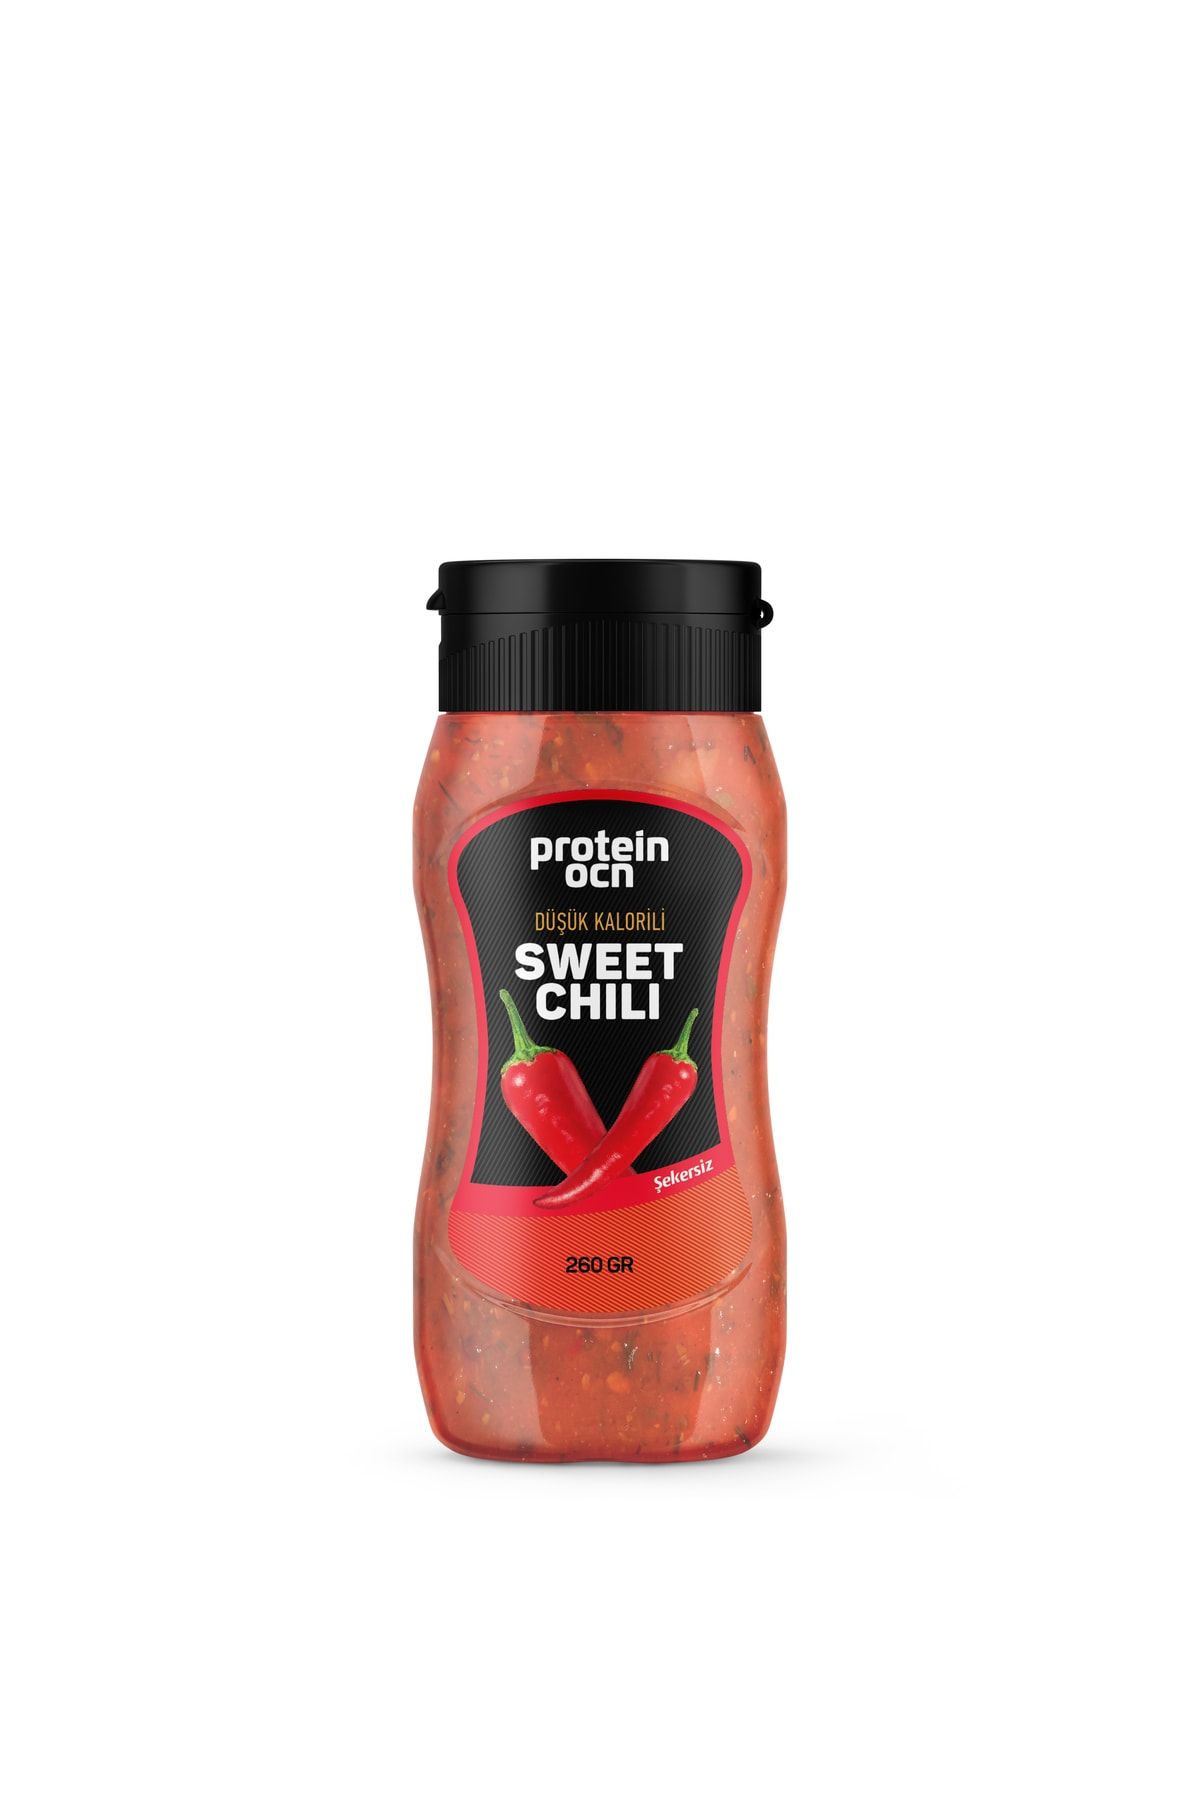 Proteinocean Sweet Chili - Şekersiz | Düşük Kalorili - 260g